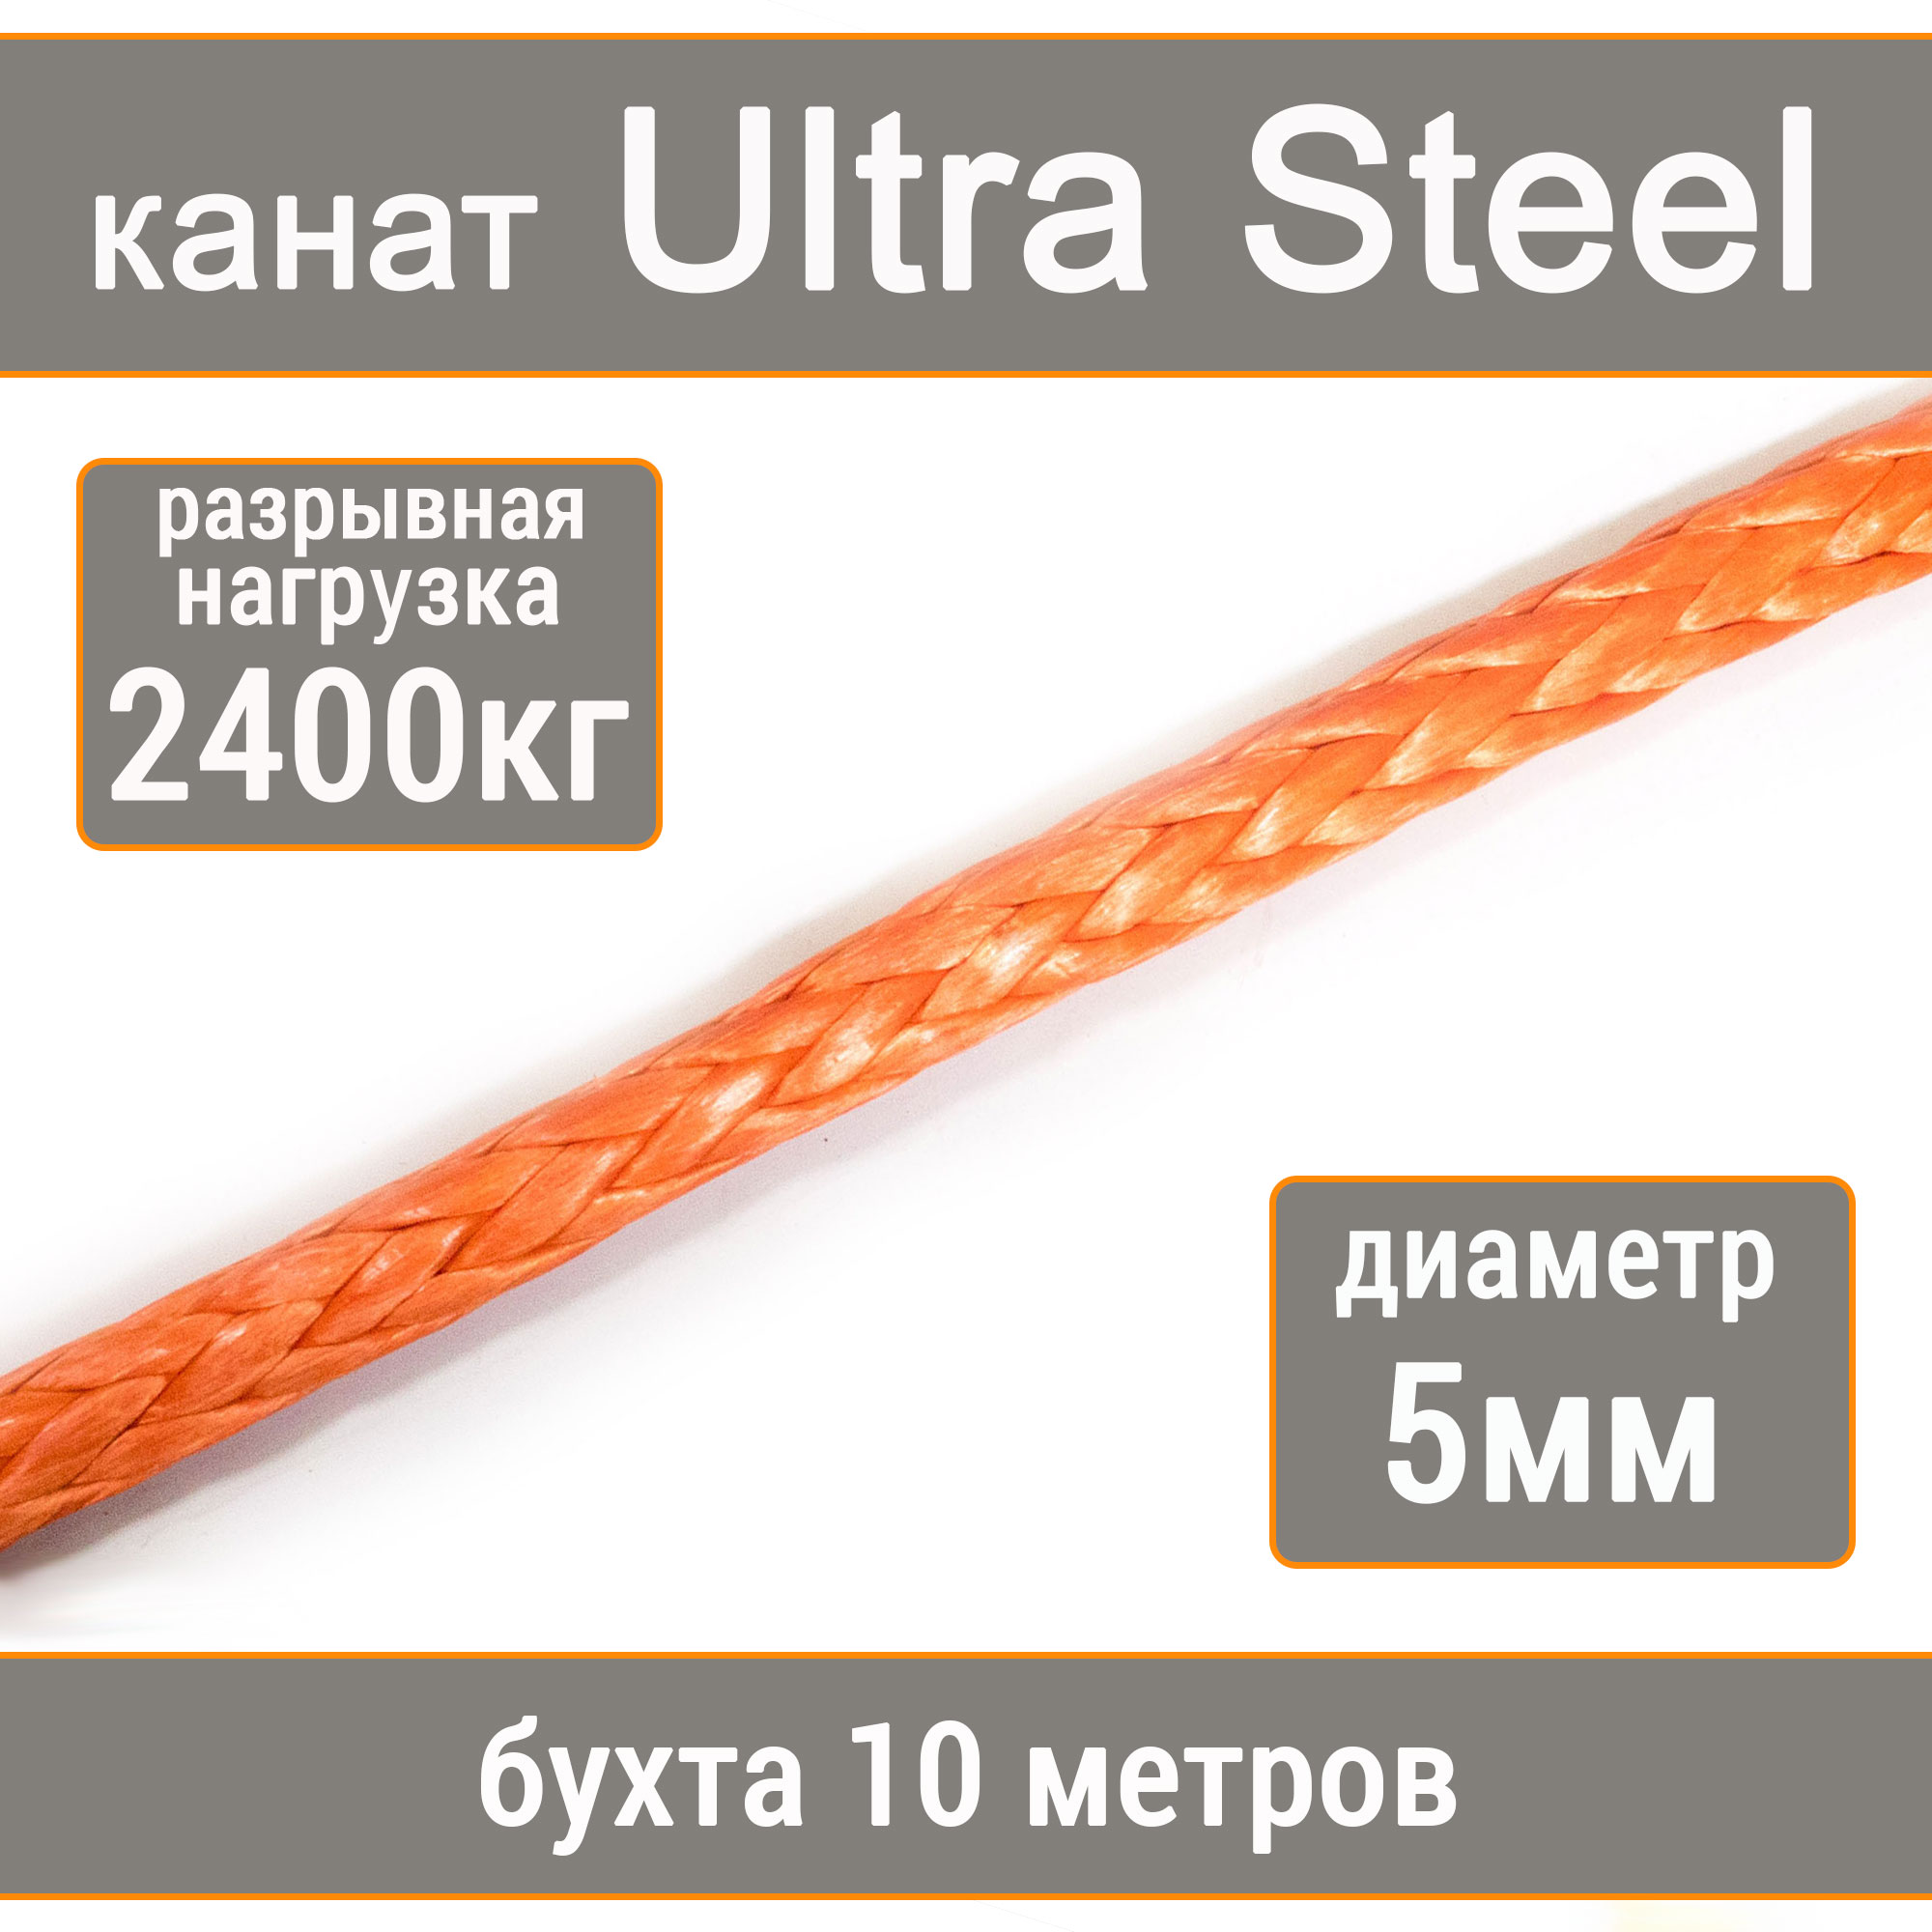 Высокопрочный синтетический канат UTX Ultra Steel 5мм р.н.2400кг, 007654321-105 манильский канат щит мт d 8 мм на кат 200 мм 160 м 66879